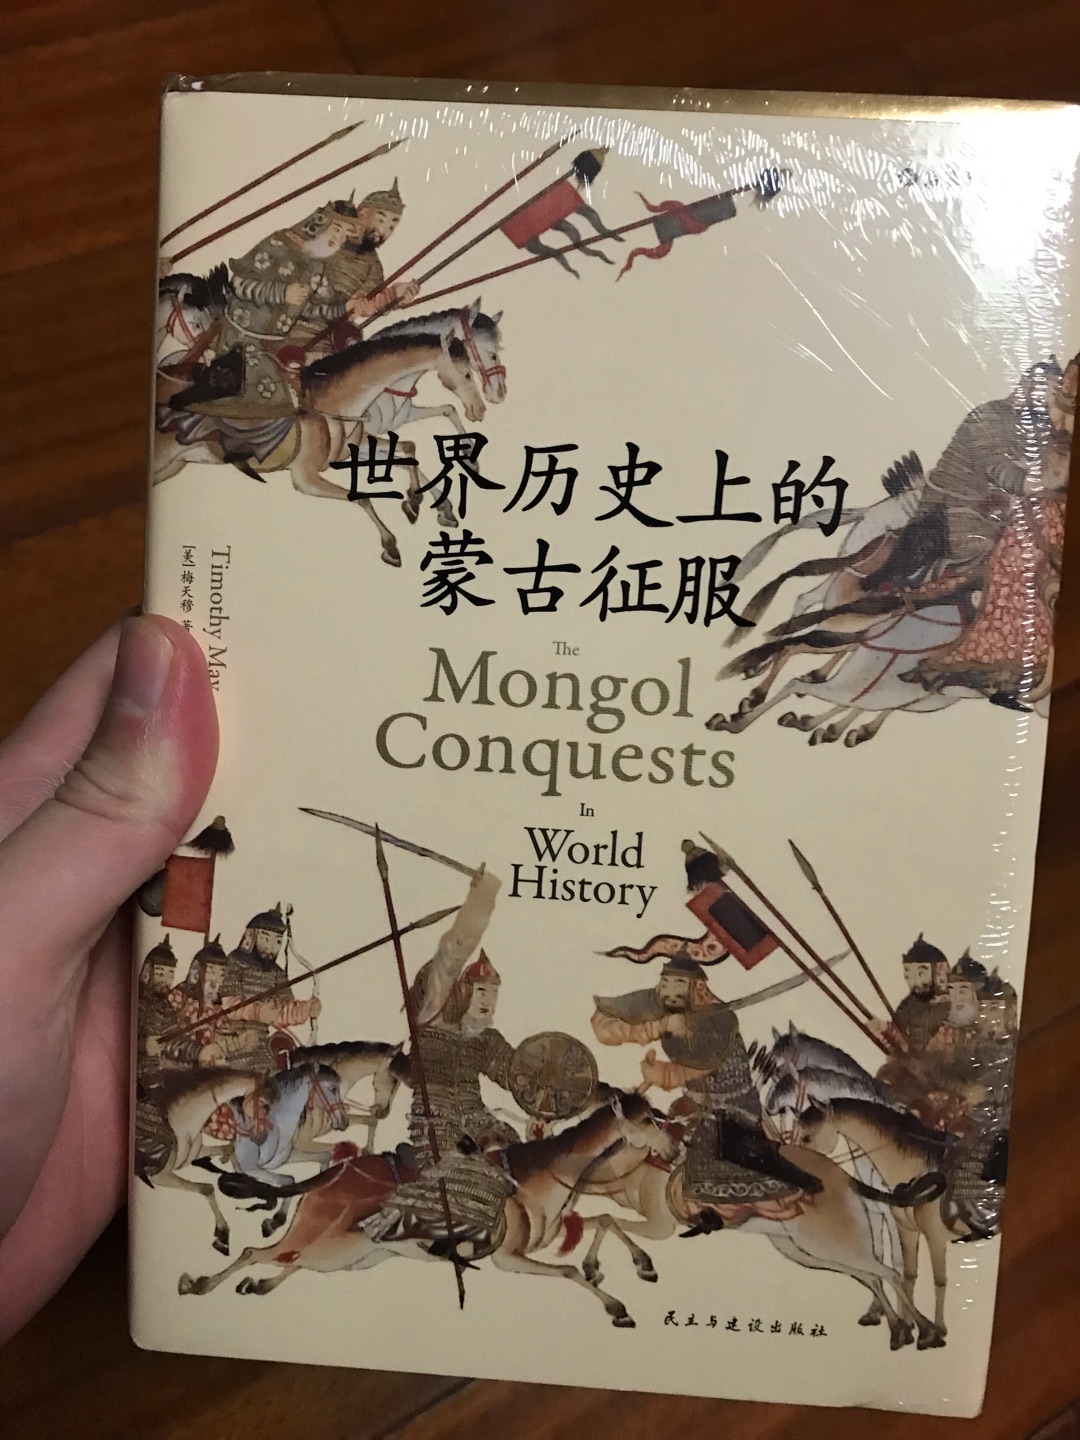 这本书基本属于凑单买的吧，因为没有蒙古方面的历史书，看了豆瓣上的评价比较一般，但只要能有所收获都好。书的品质感觉没有其他几本那么好，希望靠谱